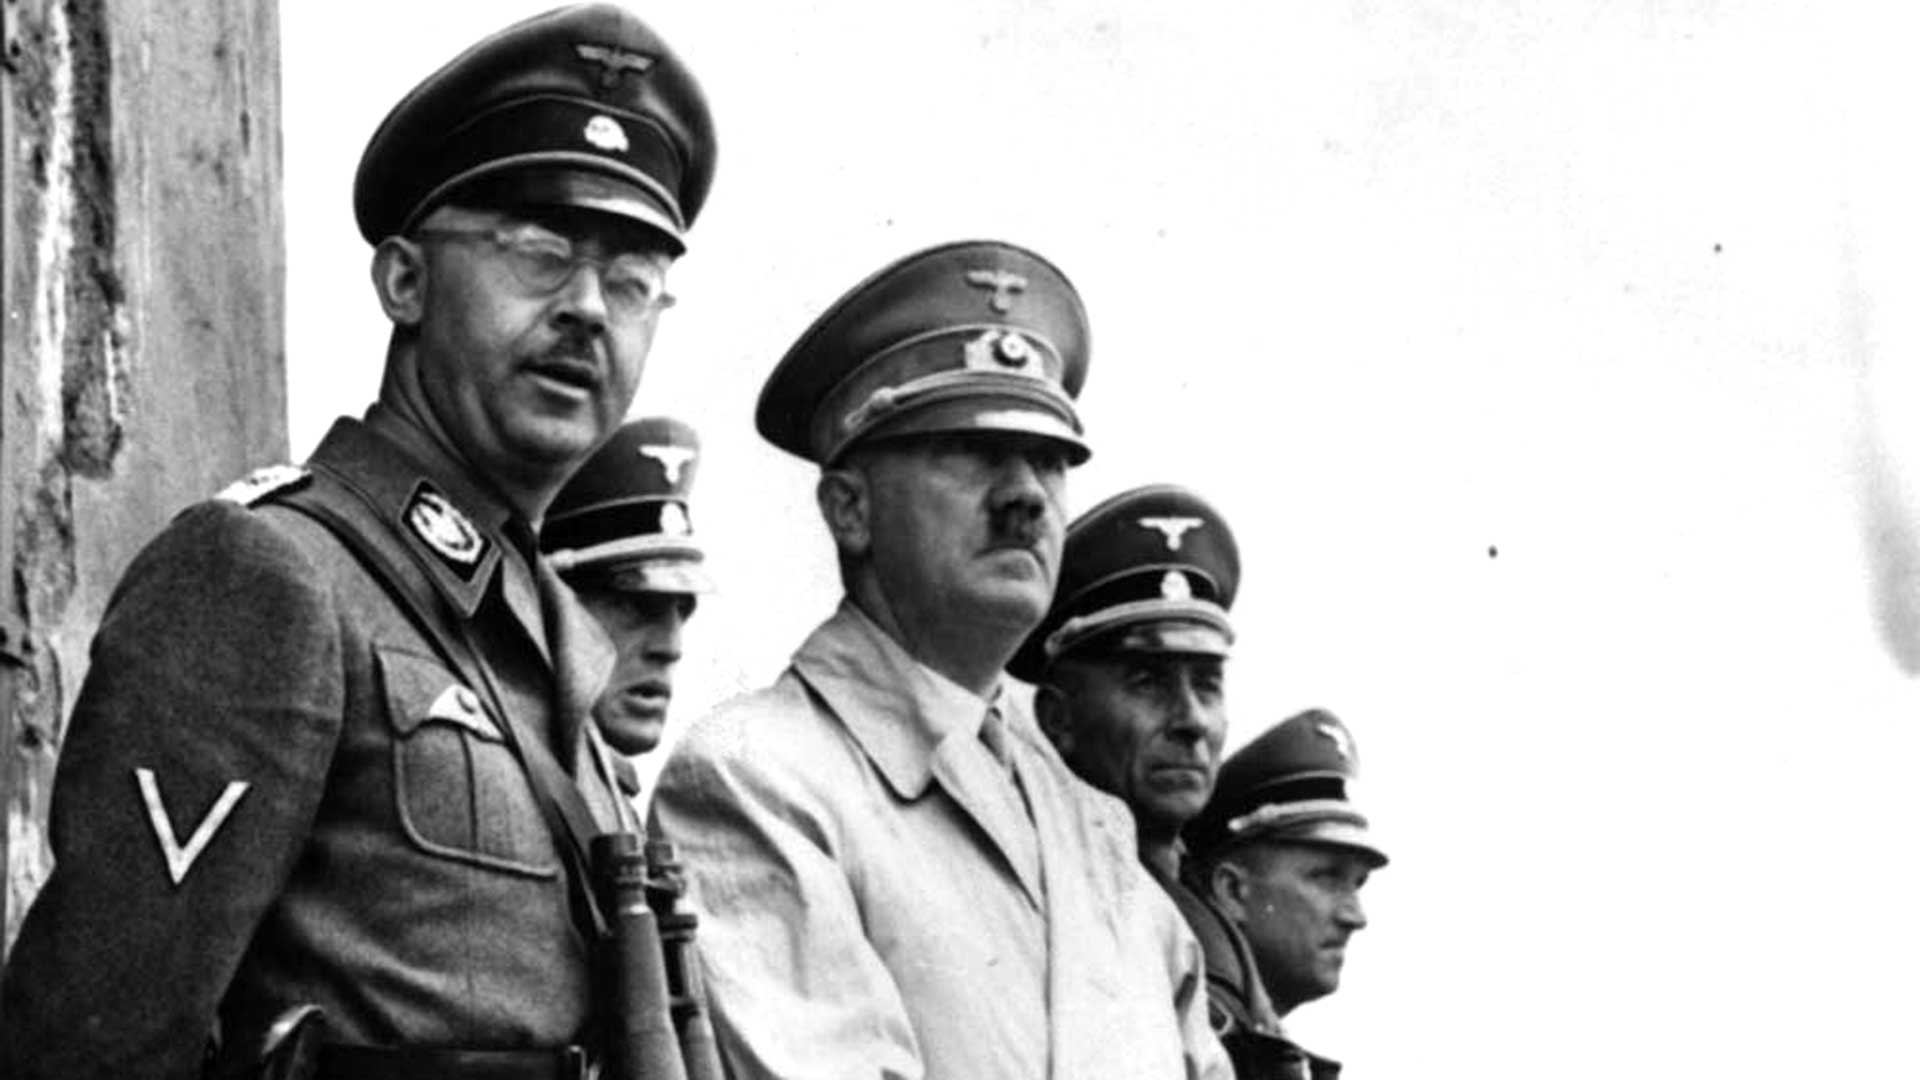 Heinrihch Himmler era el segundo de Adolf Hitler y el criminal de guerra más buscado por los aliados; había sido el arquitecto del Holocausto, responsable de la muerte de millones de personas, en su mayoría judíos europeos